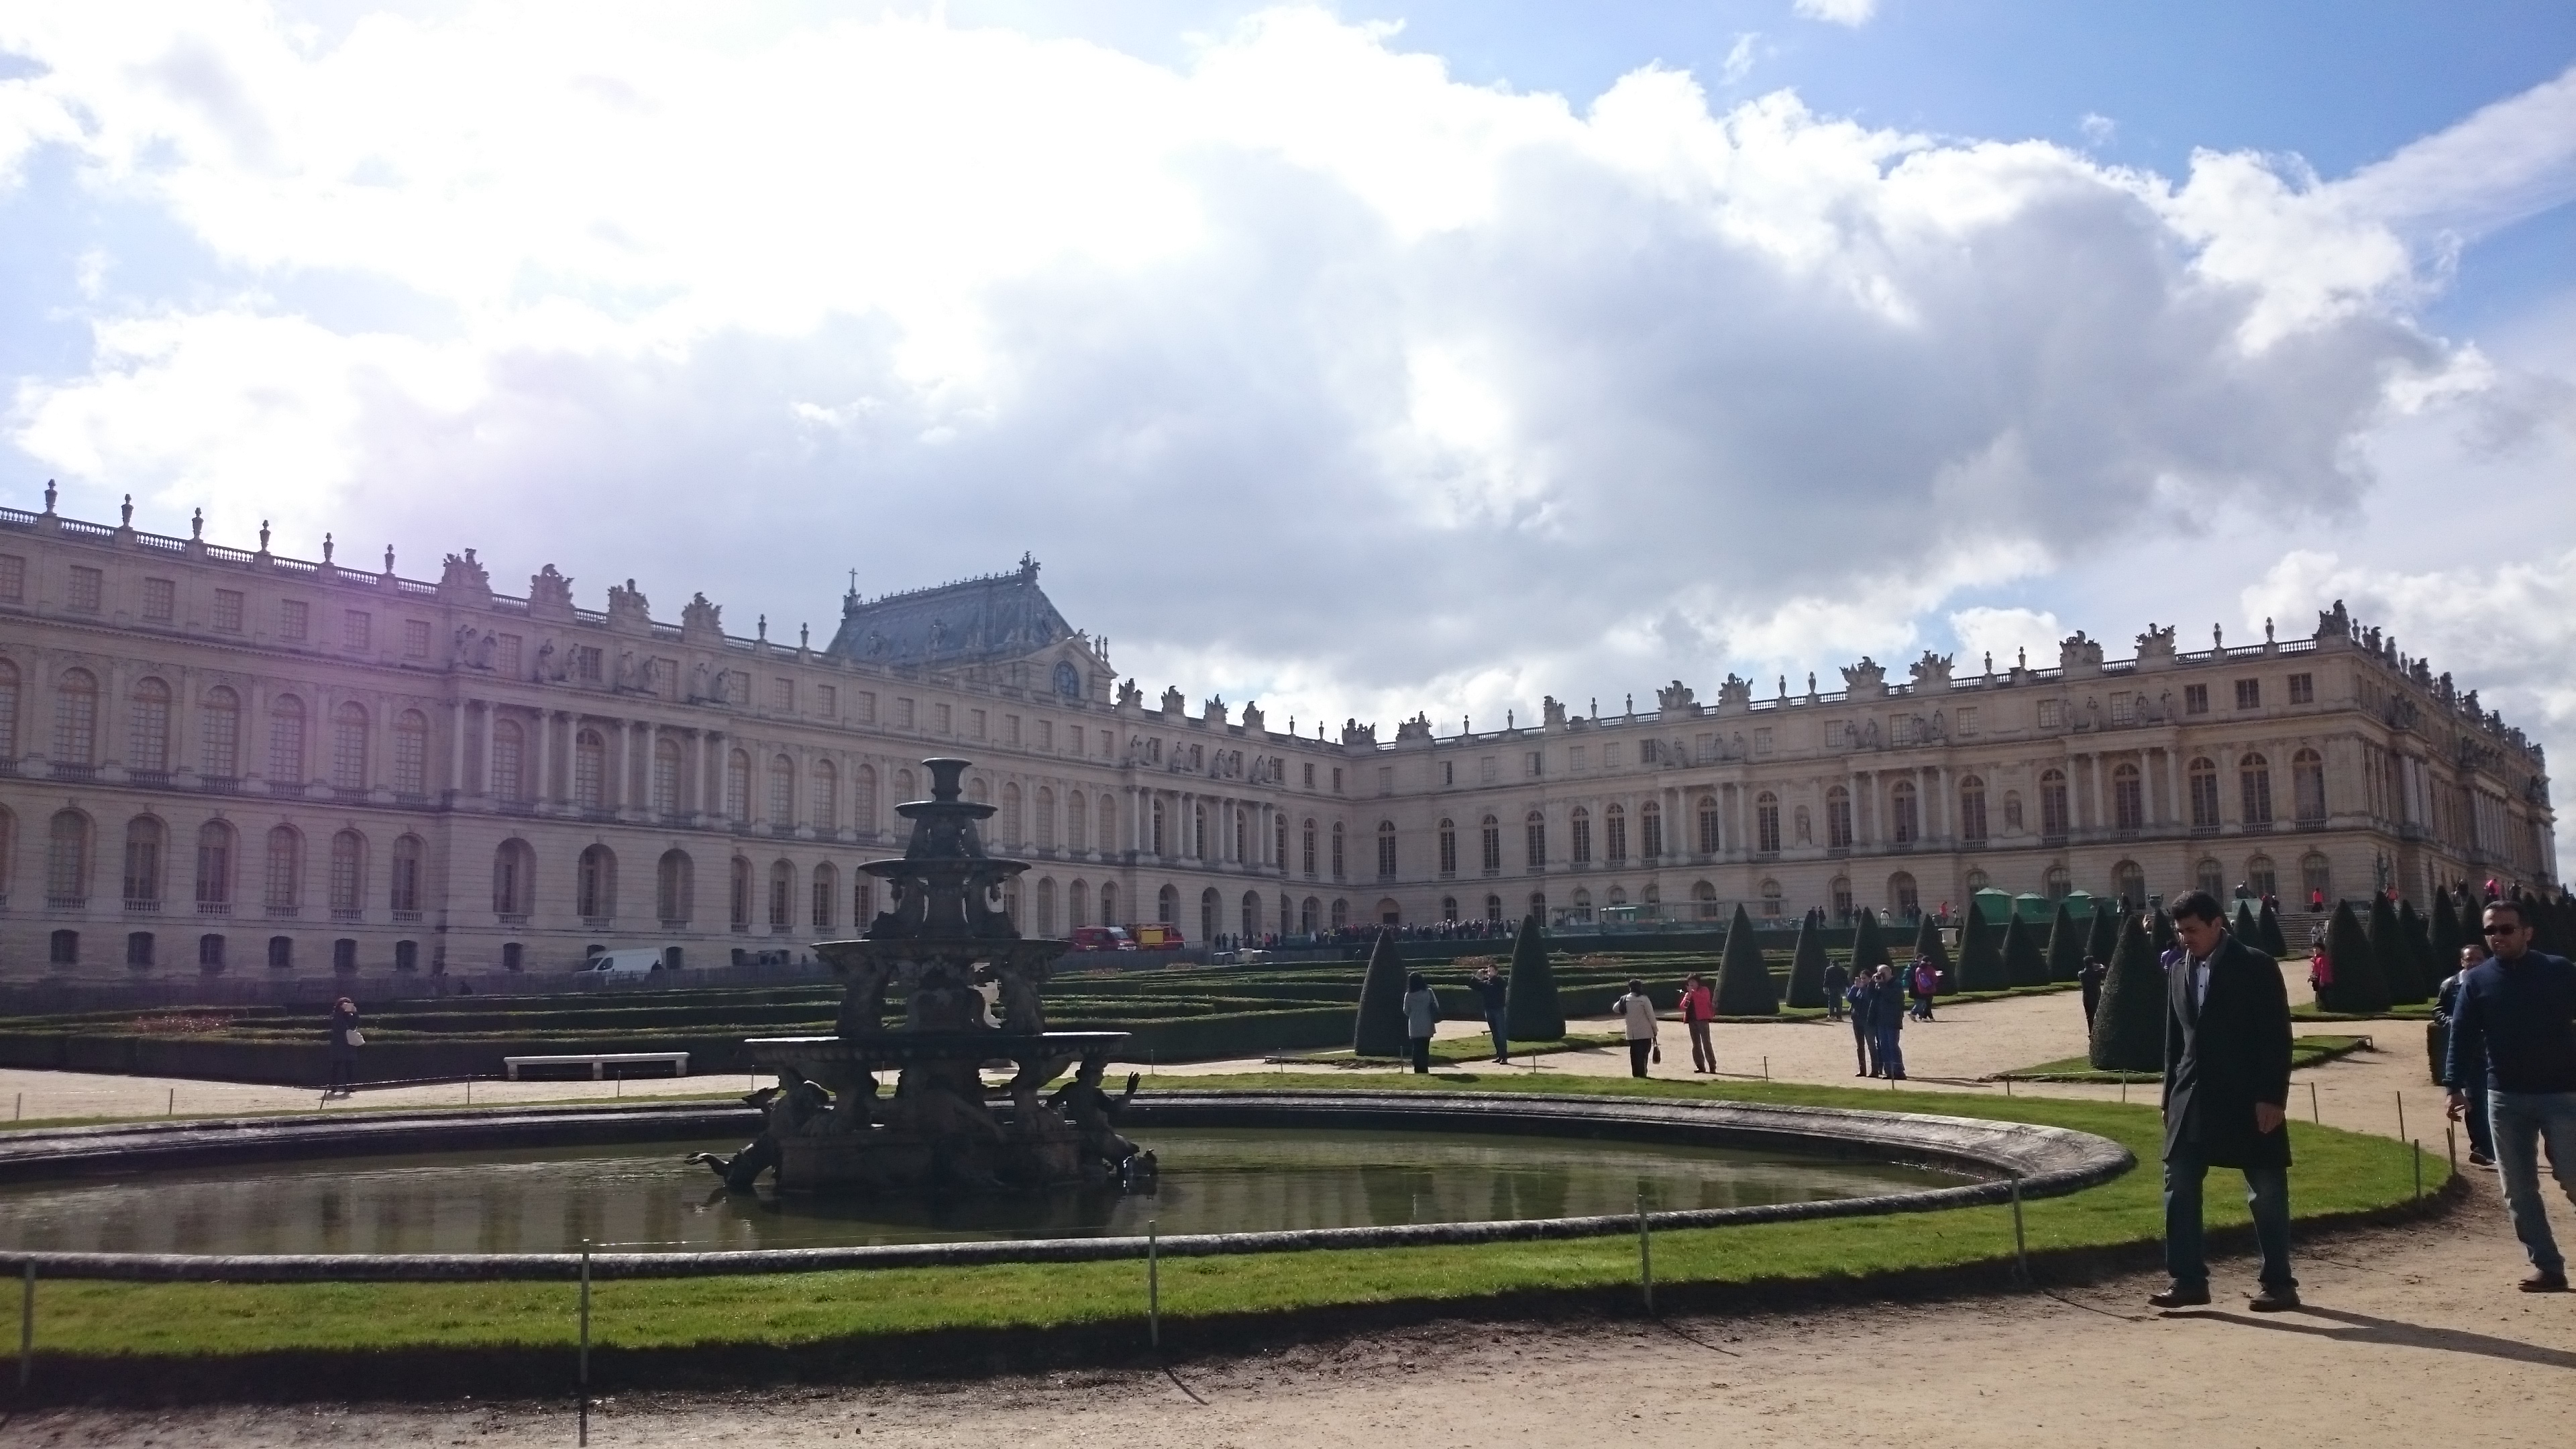 dsc 1157 copia - Visita al Palacio de Versalles: Como ir, cuanto cuesta y tips I/III